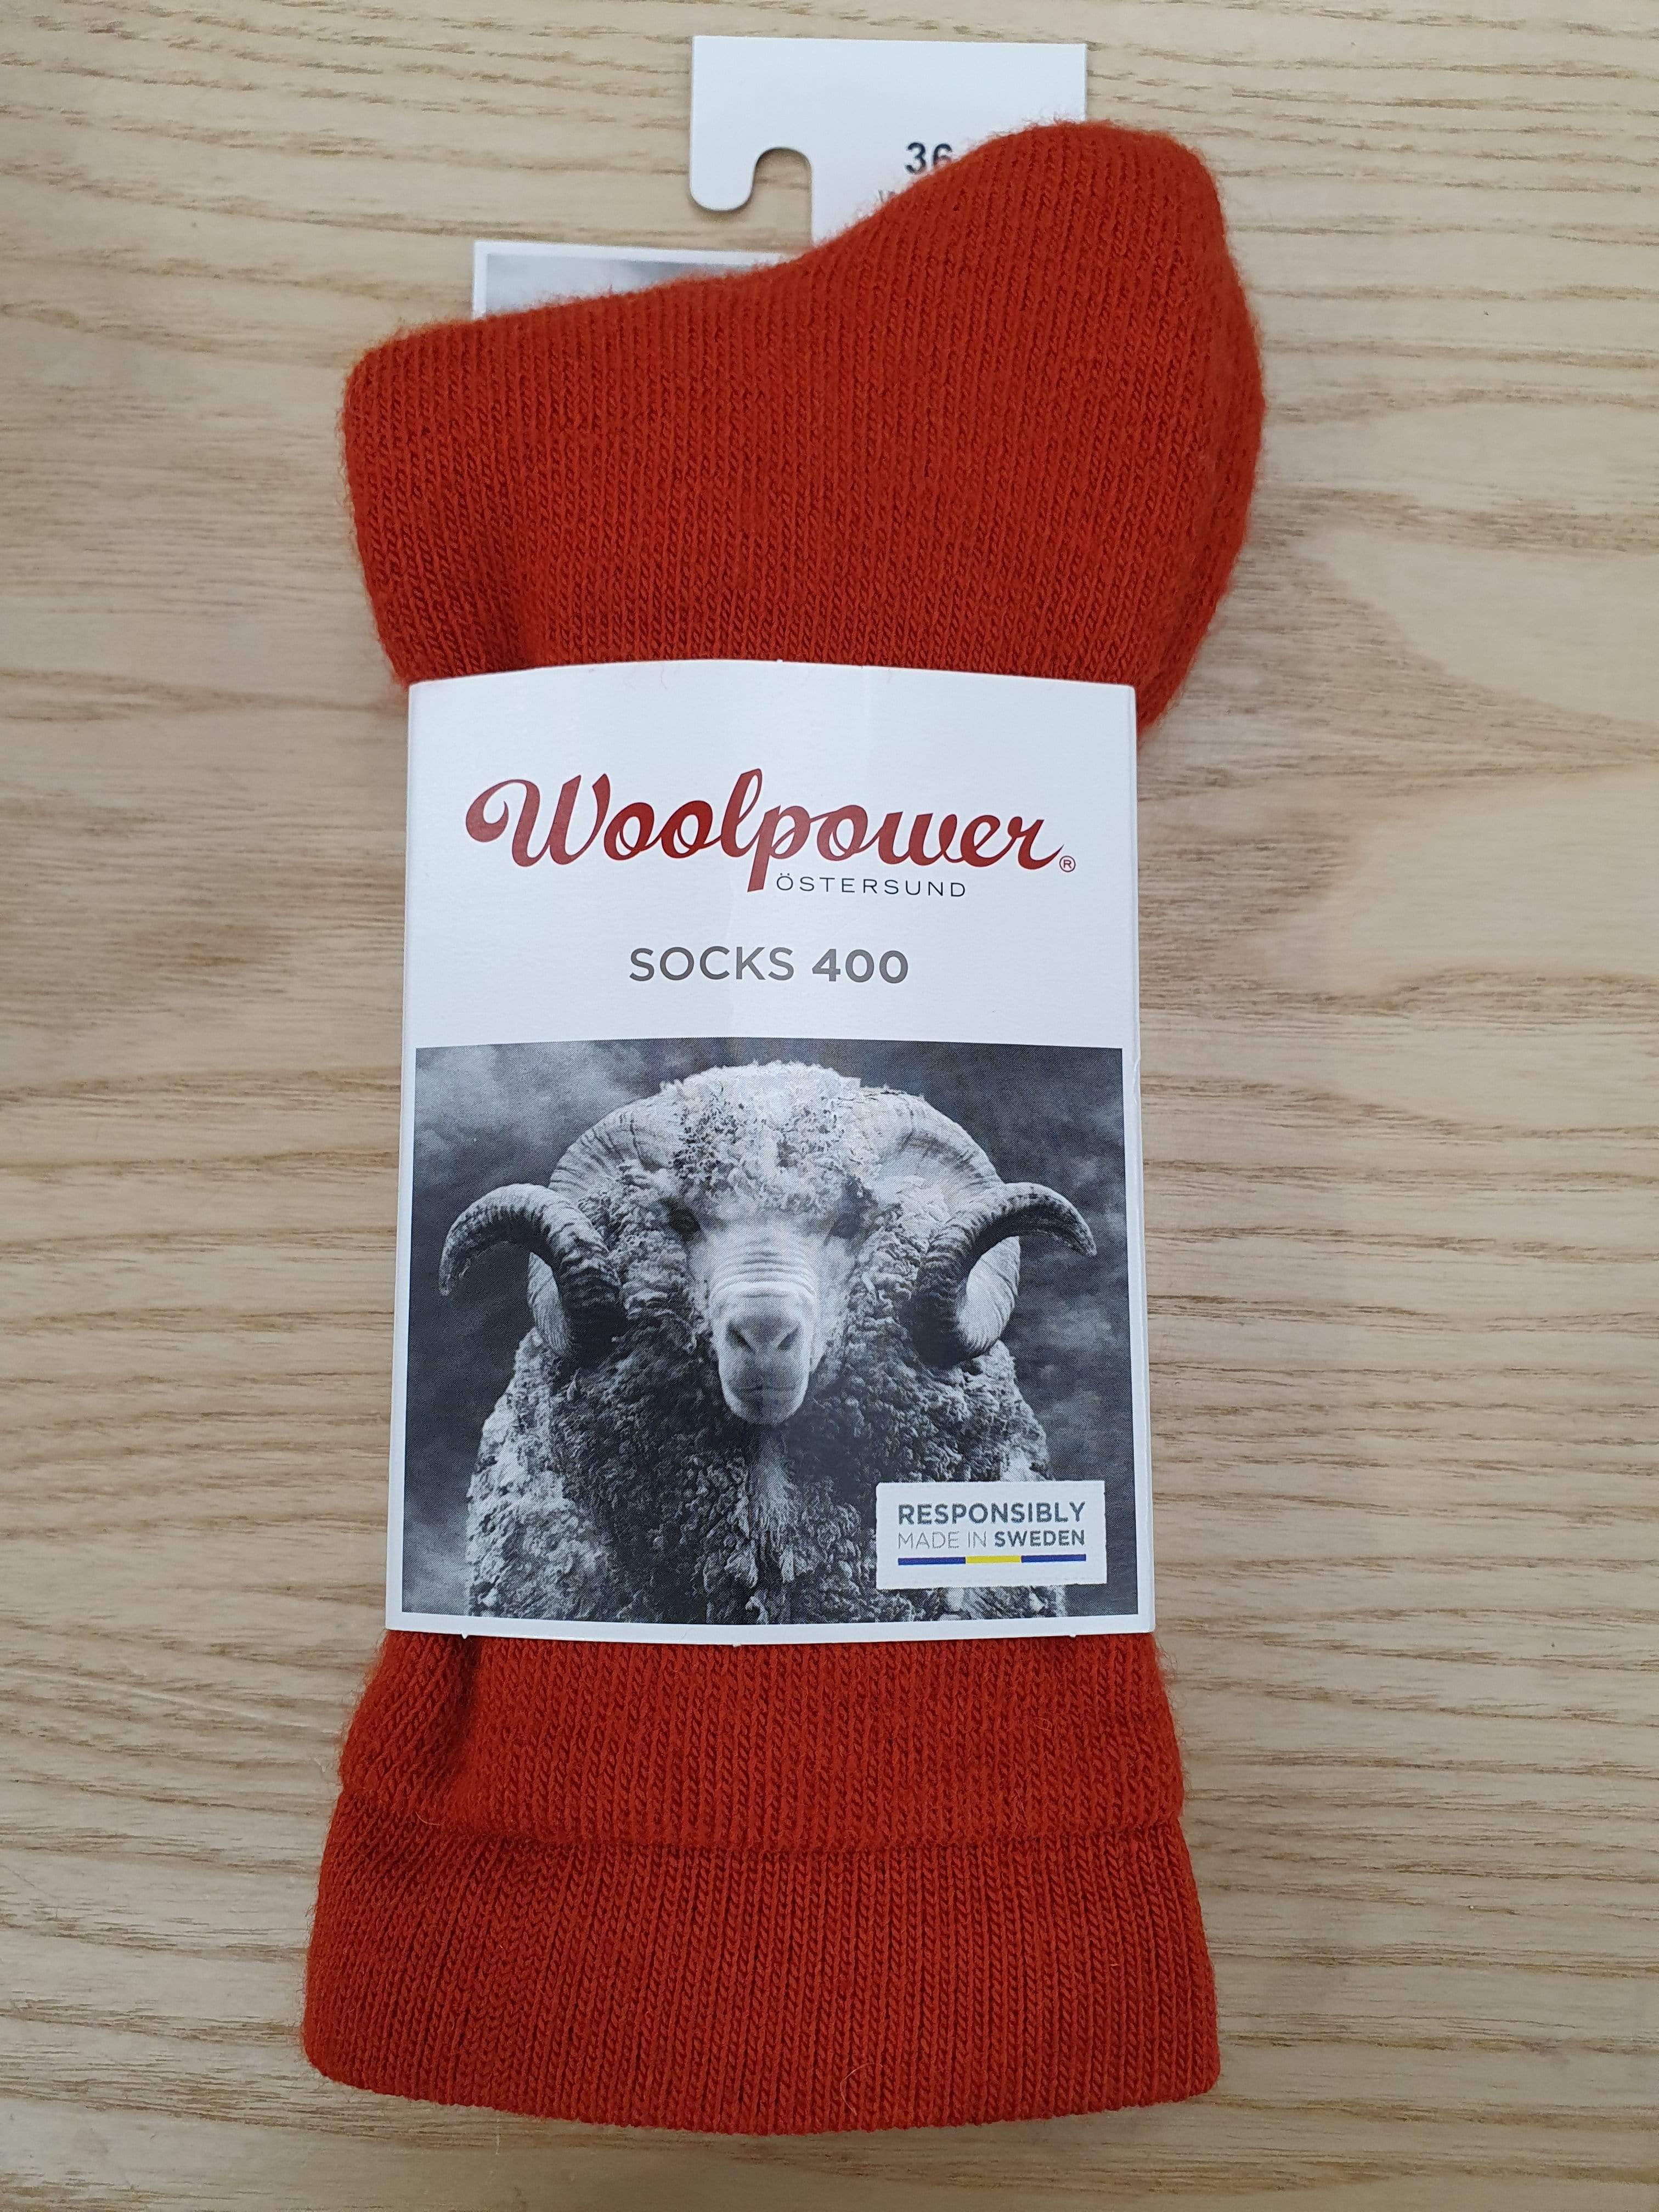 Woolpower Socks 36-39 EU / Autumn Red Woolpower Classic 400g Socks Autumn Red